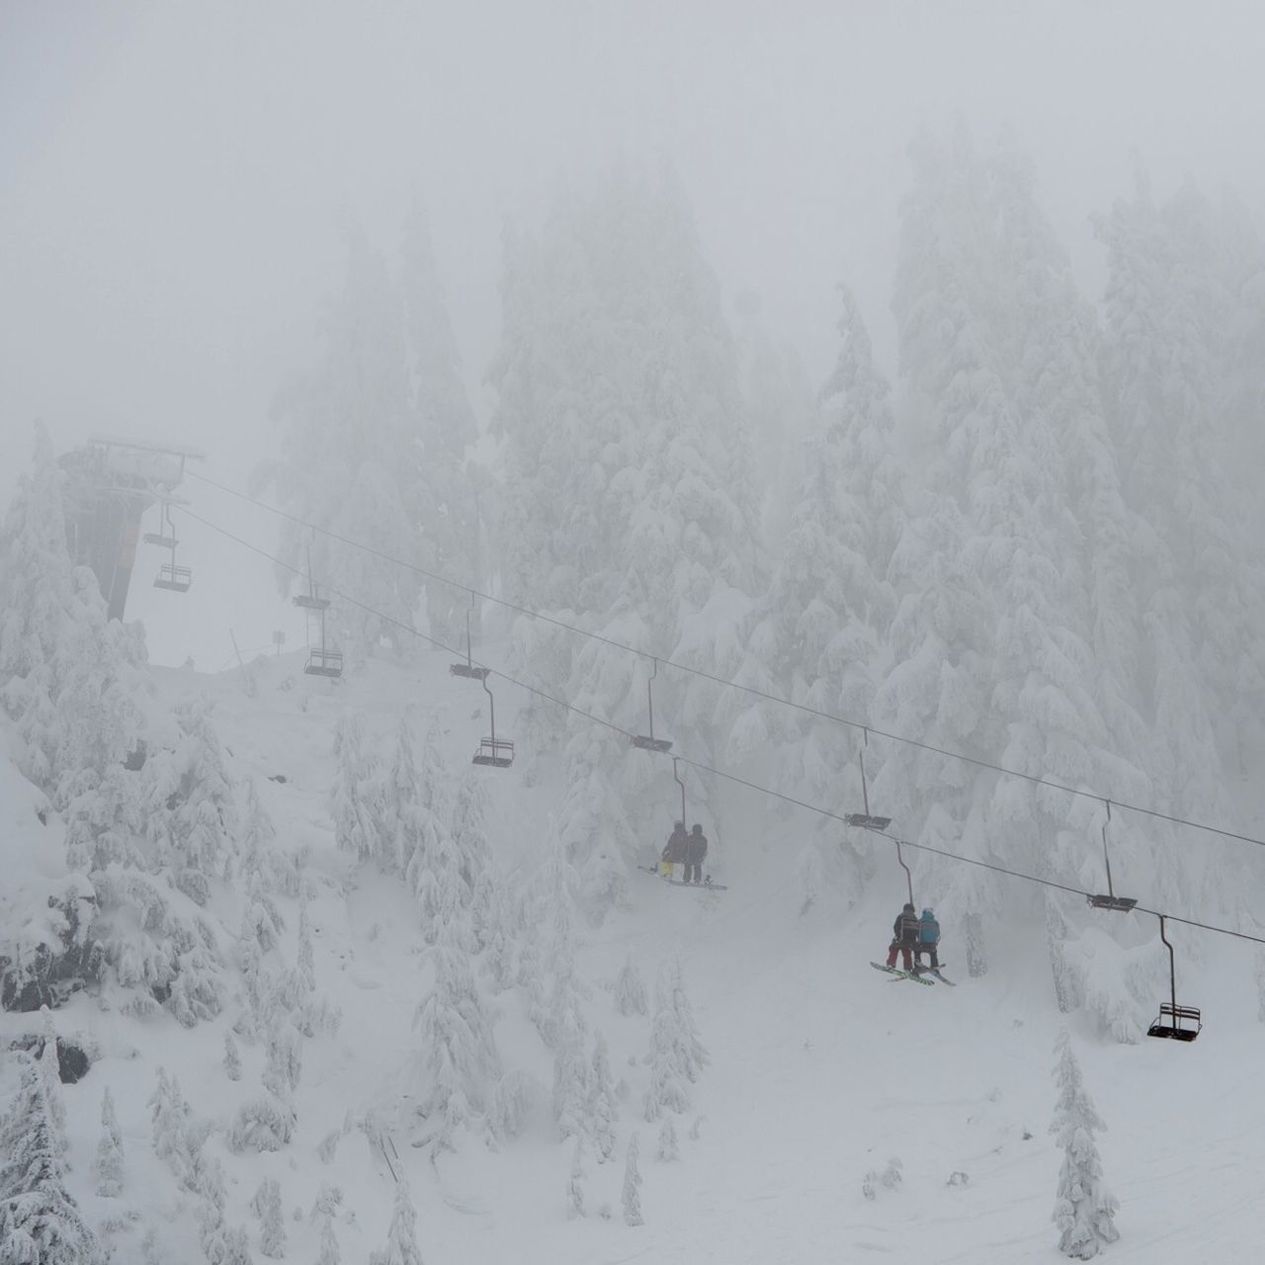 Ski lift against snow covered trees